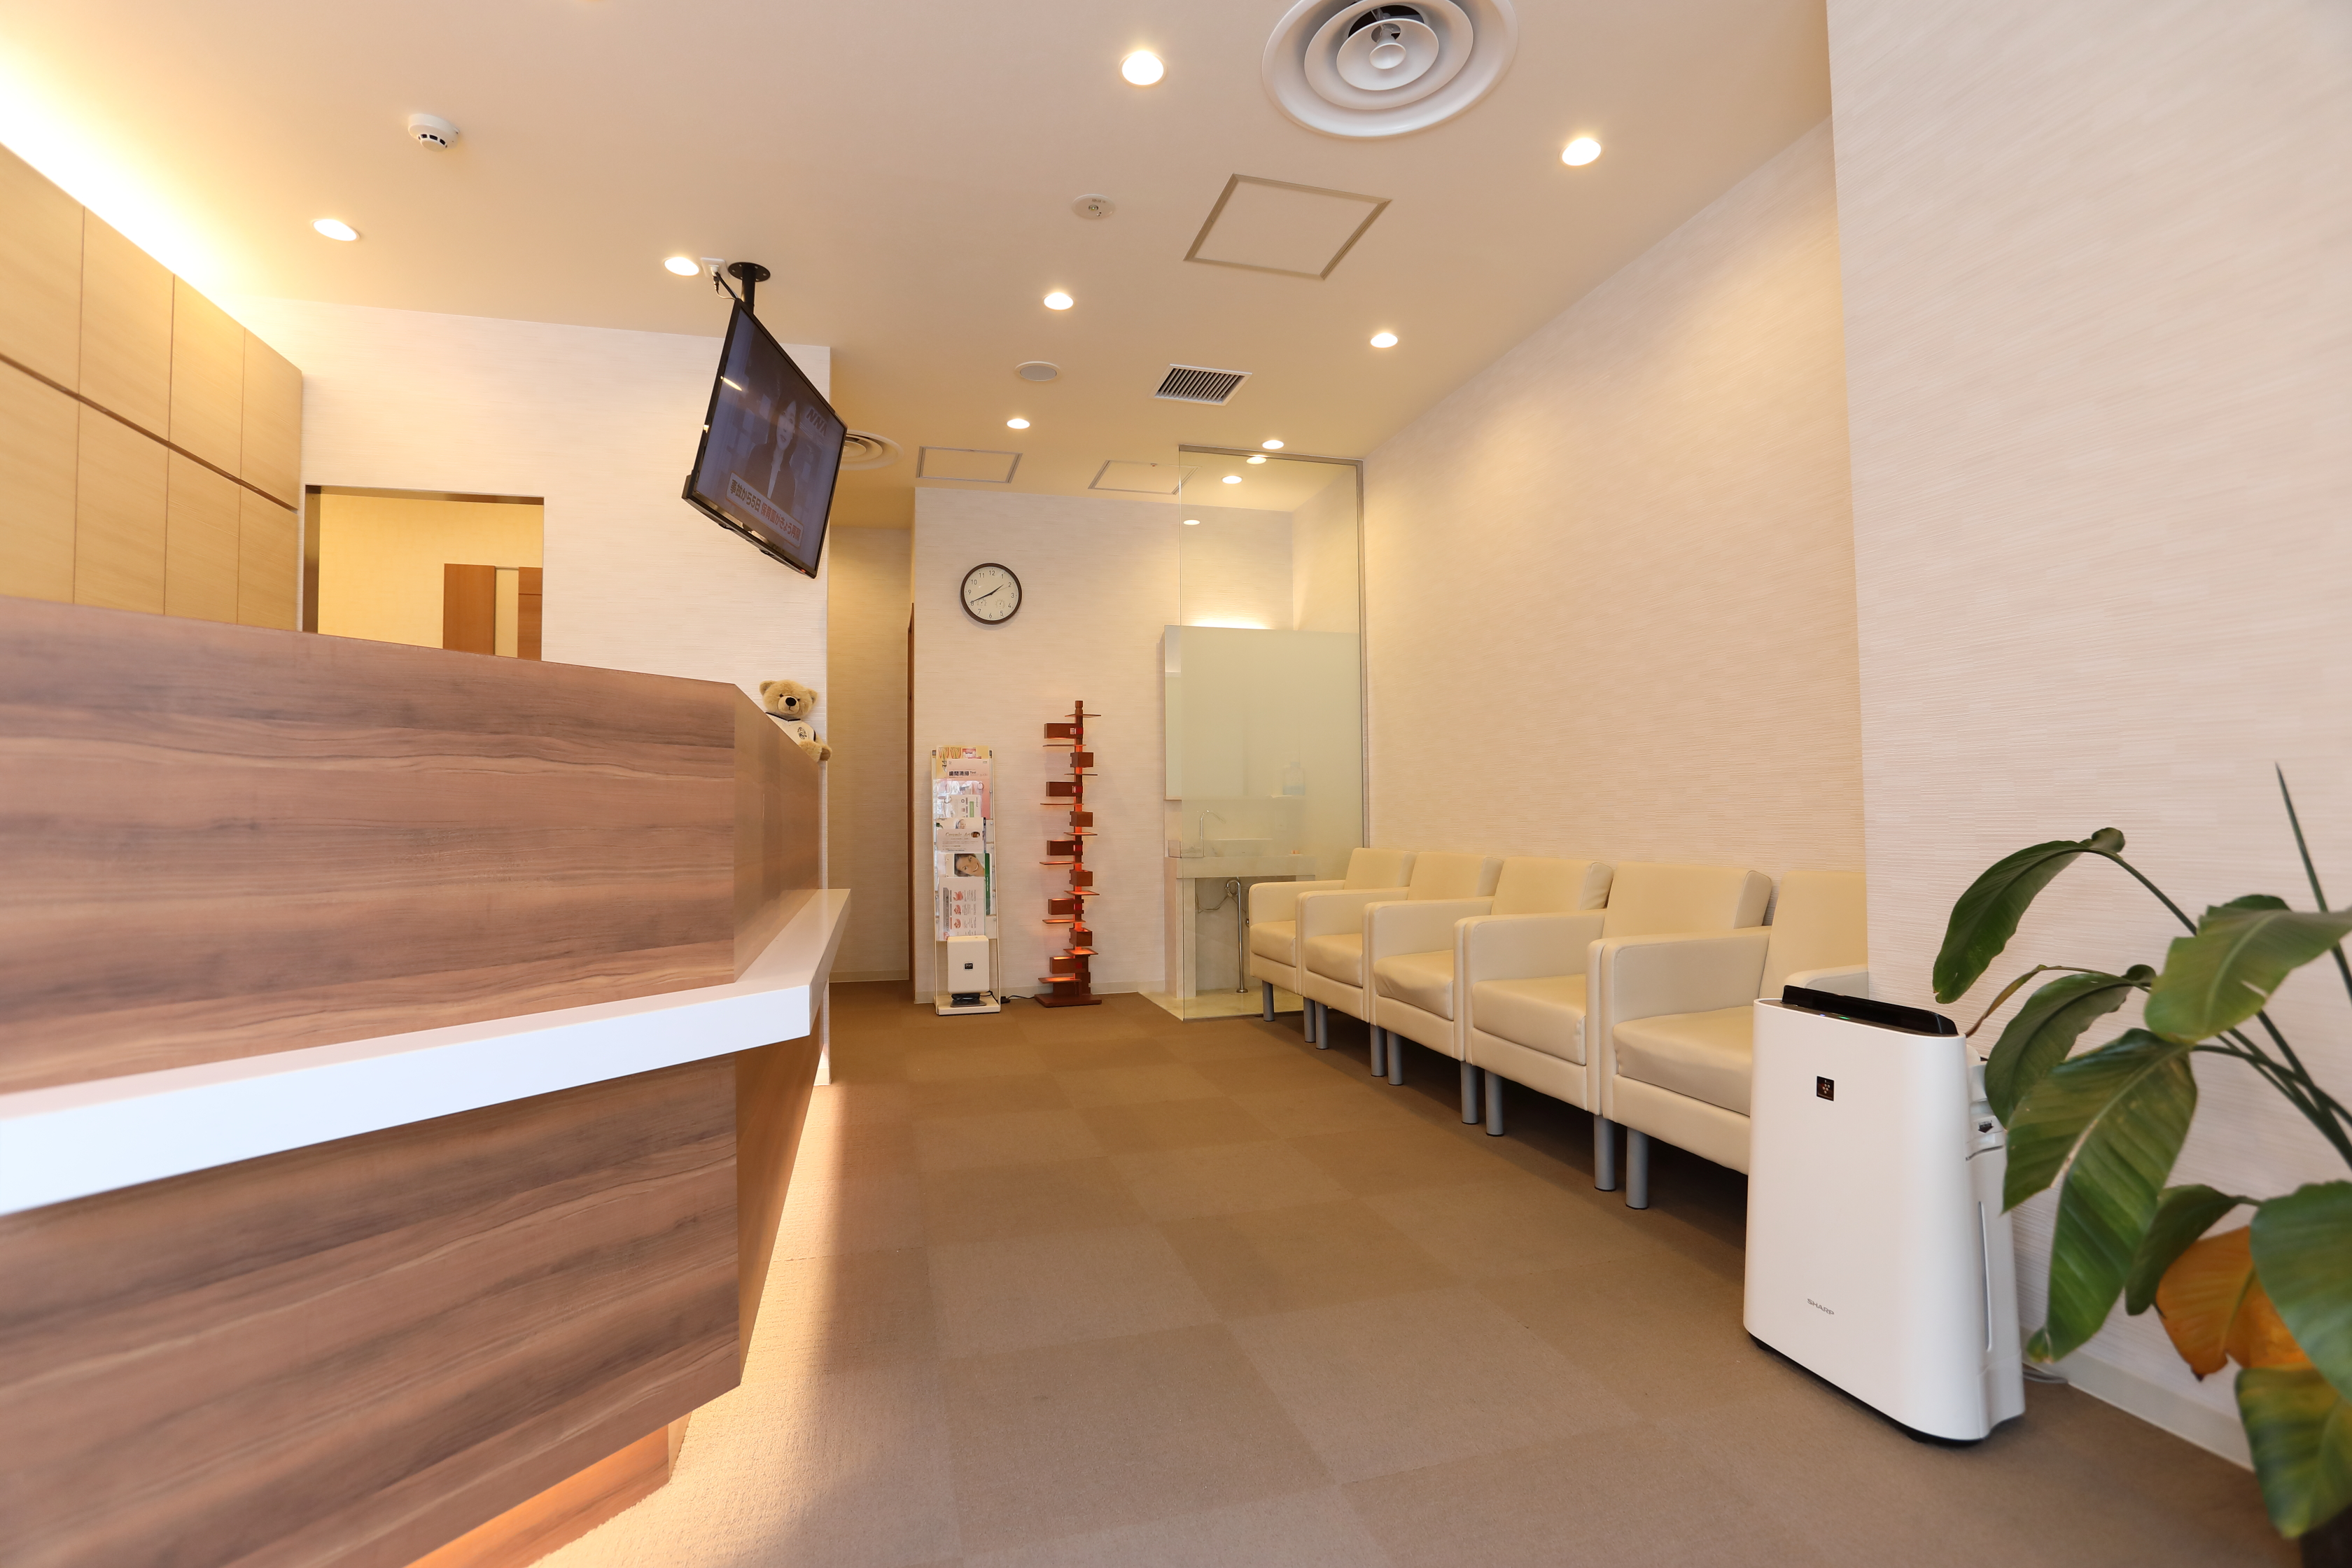 神戸三宮谷歯科クリニックでは、歯石除去・歯のクリーニング、ヤニとりは保険適応になります。